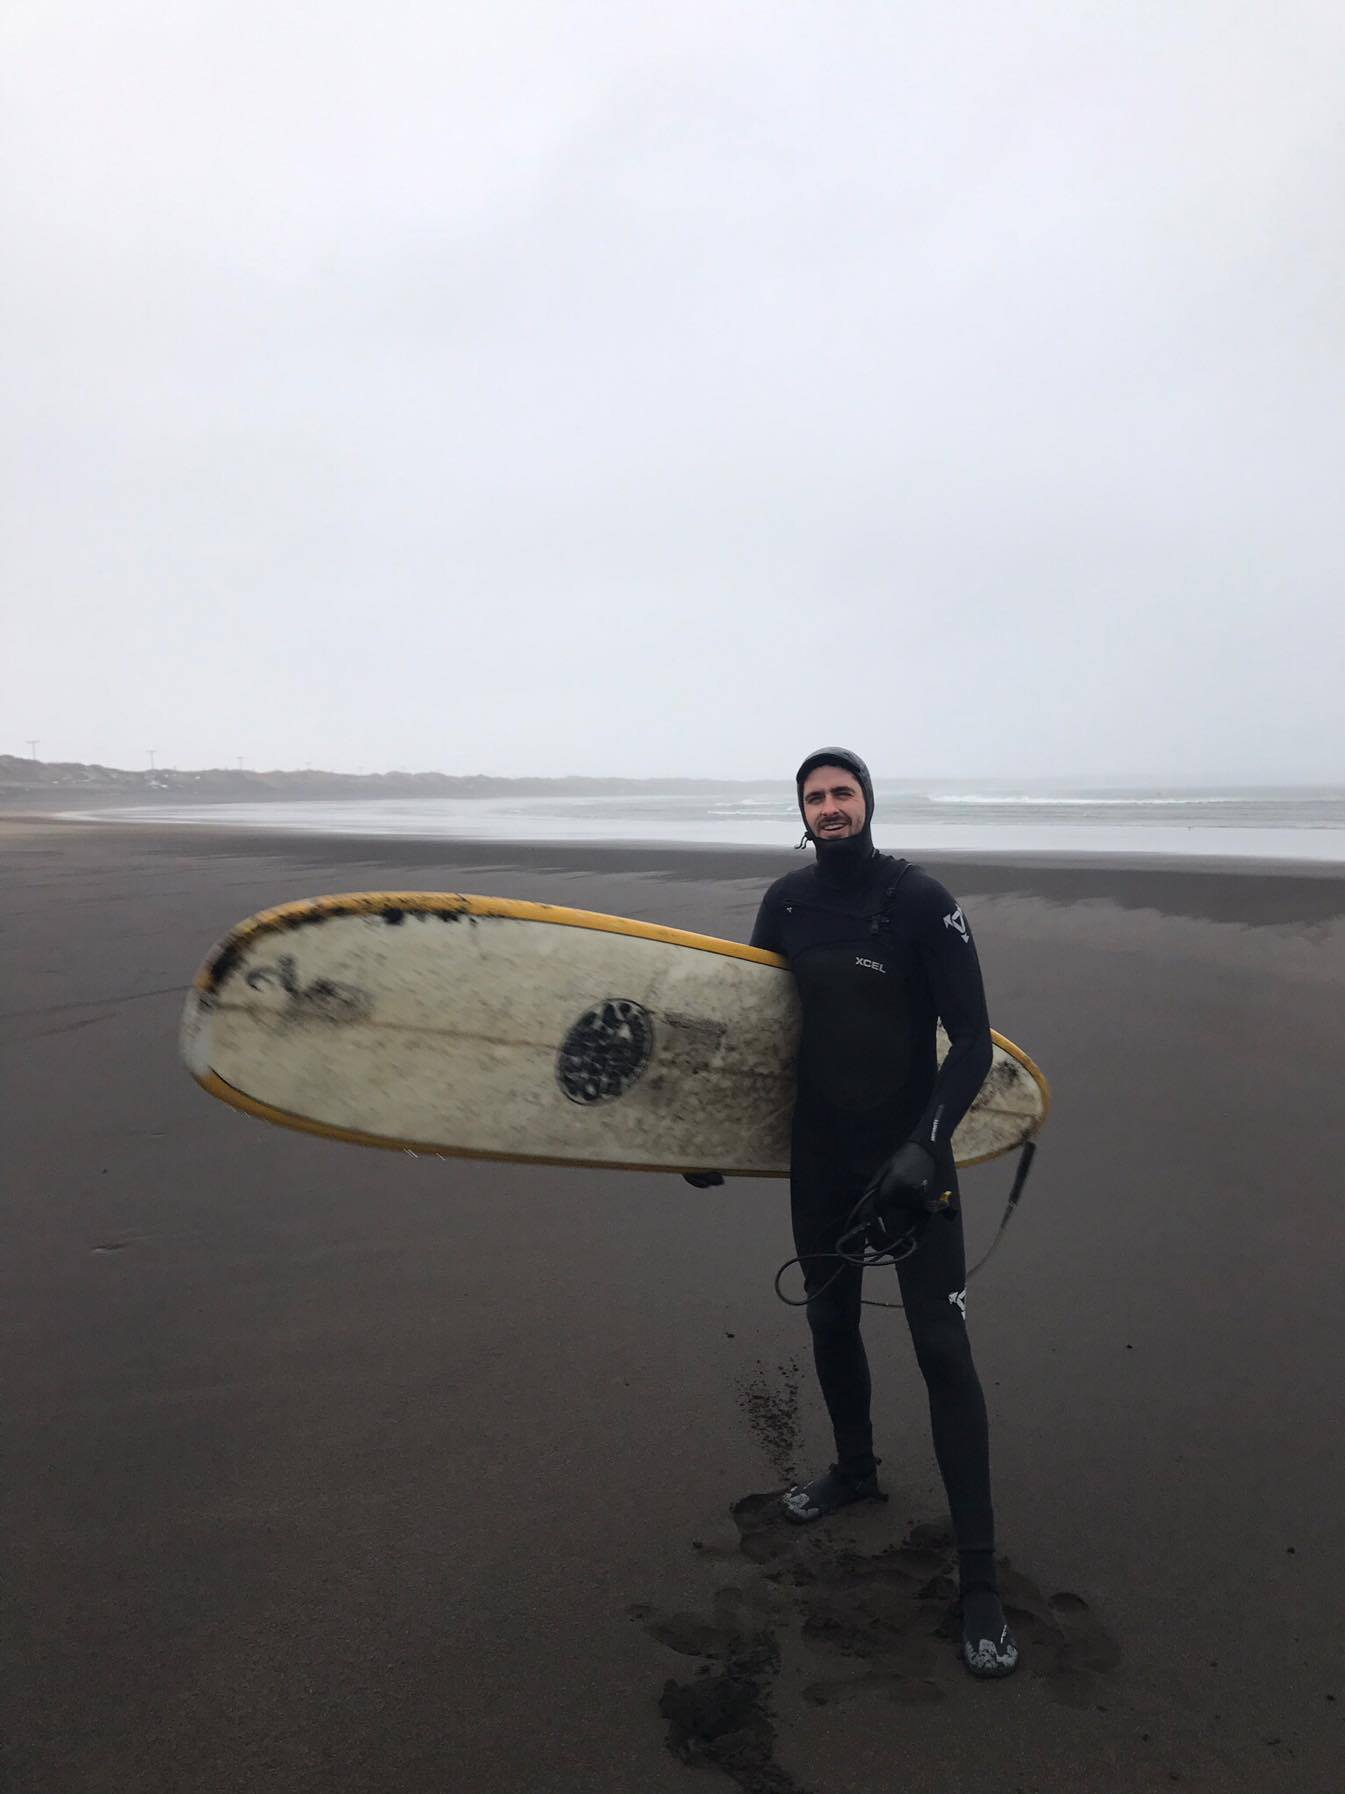 Winter surfing in Iceland